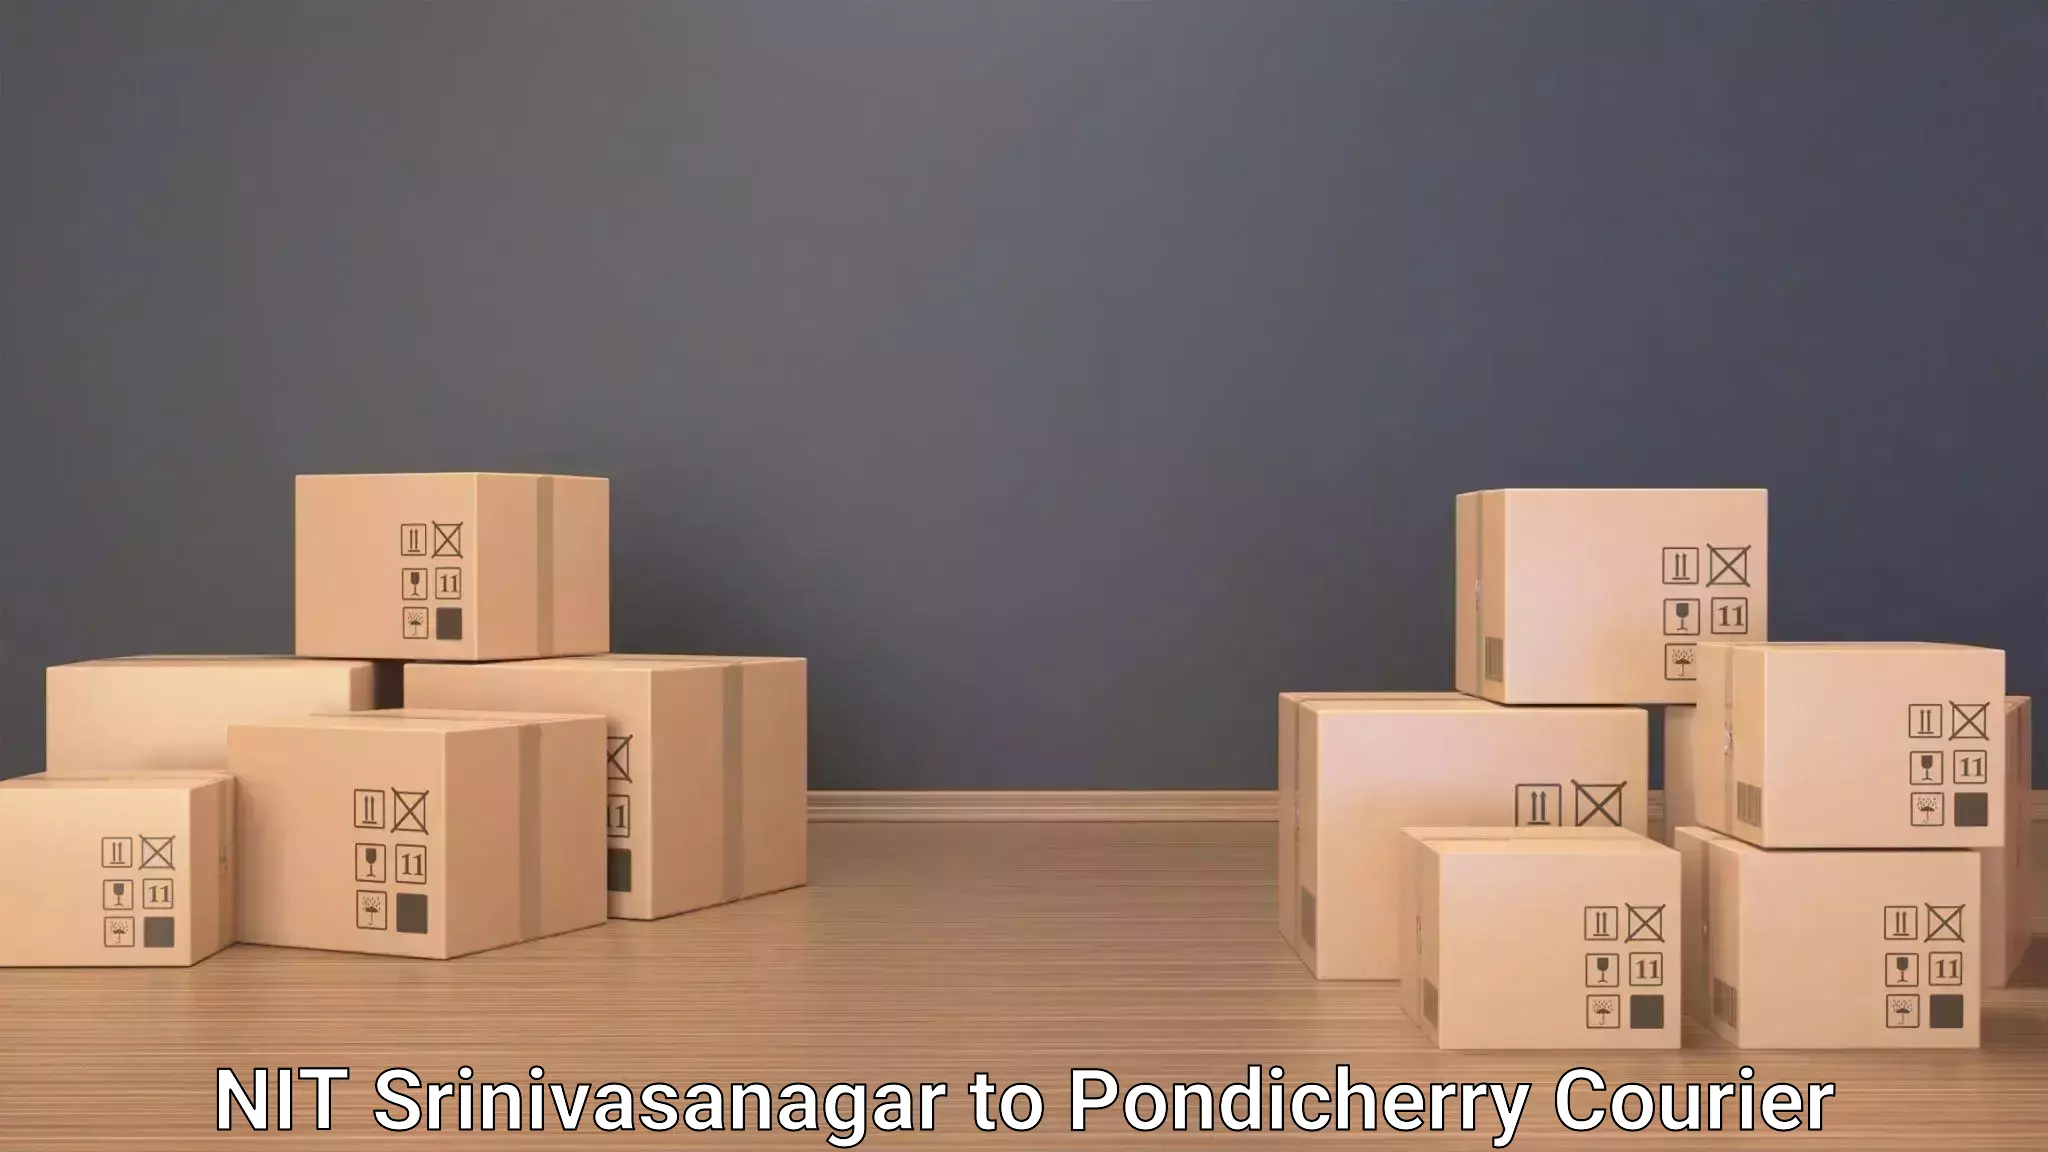 Luggage delivery app NIT Srinivasanagar to Pondicherry